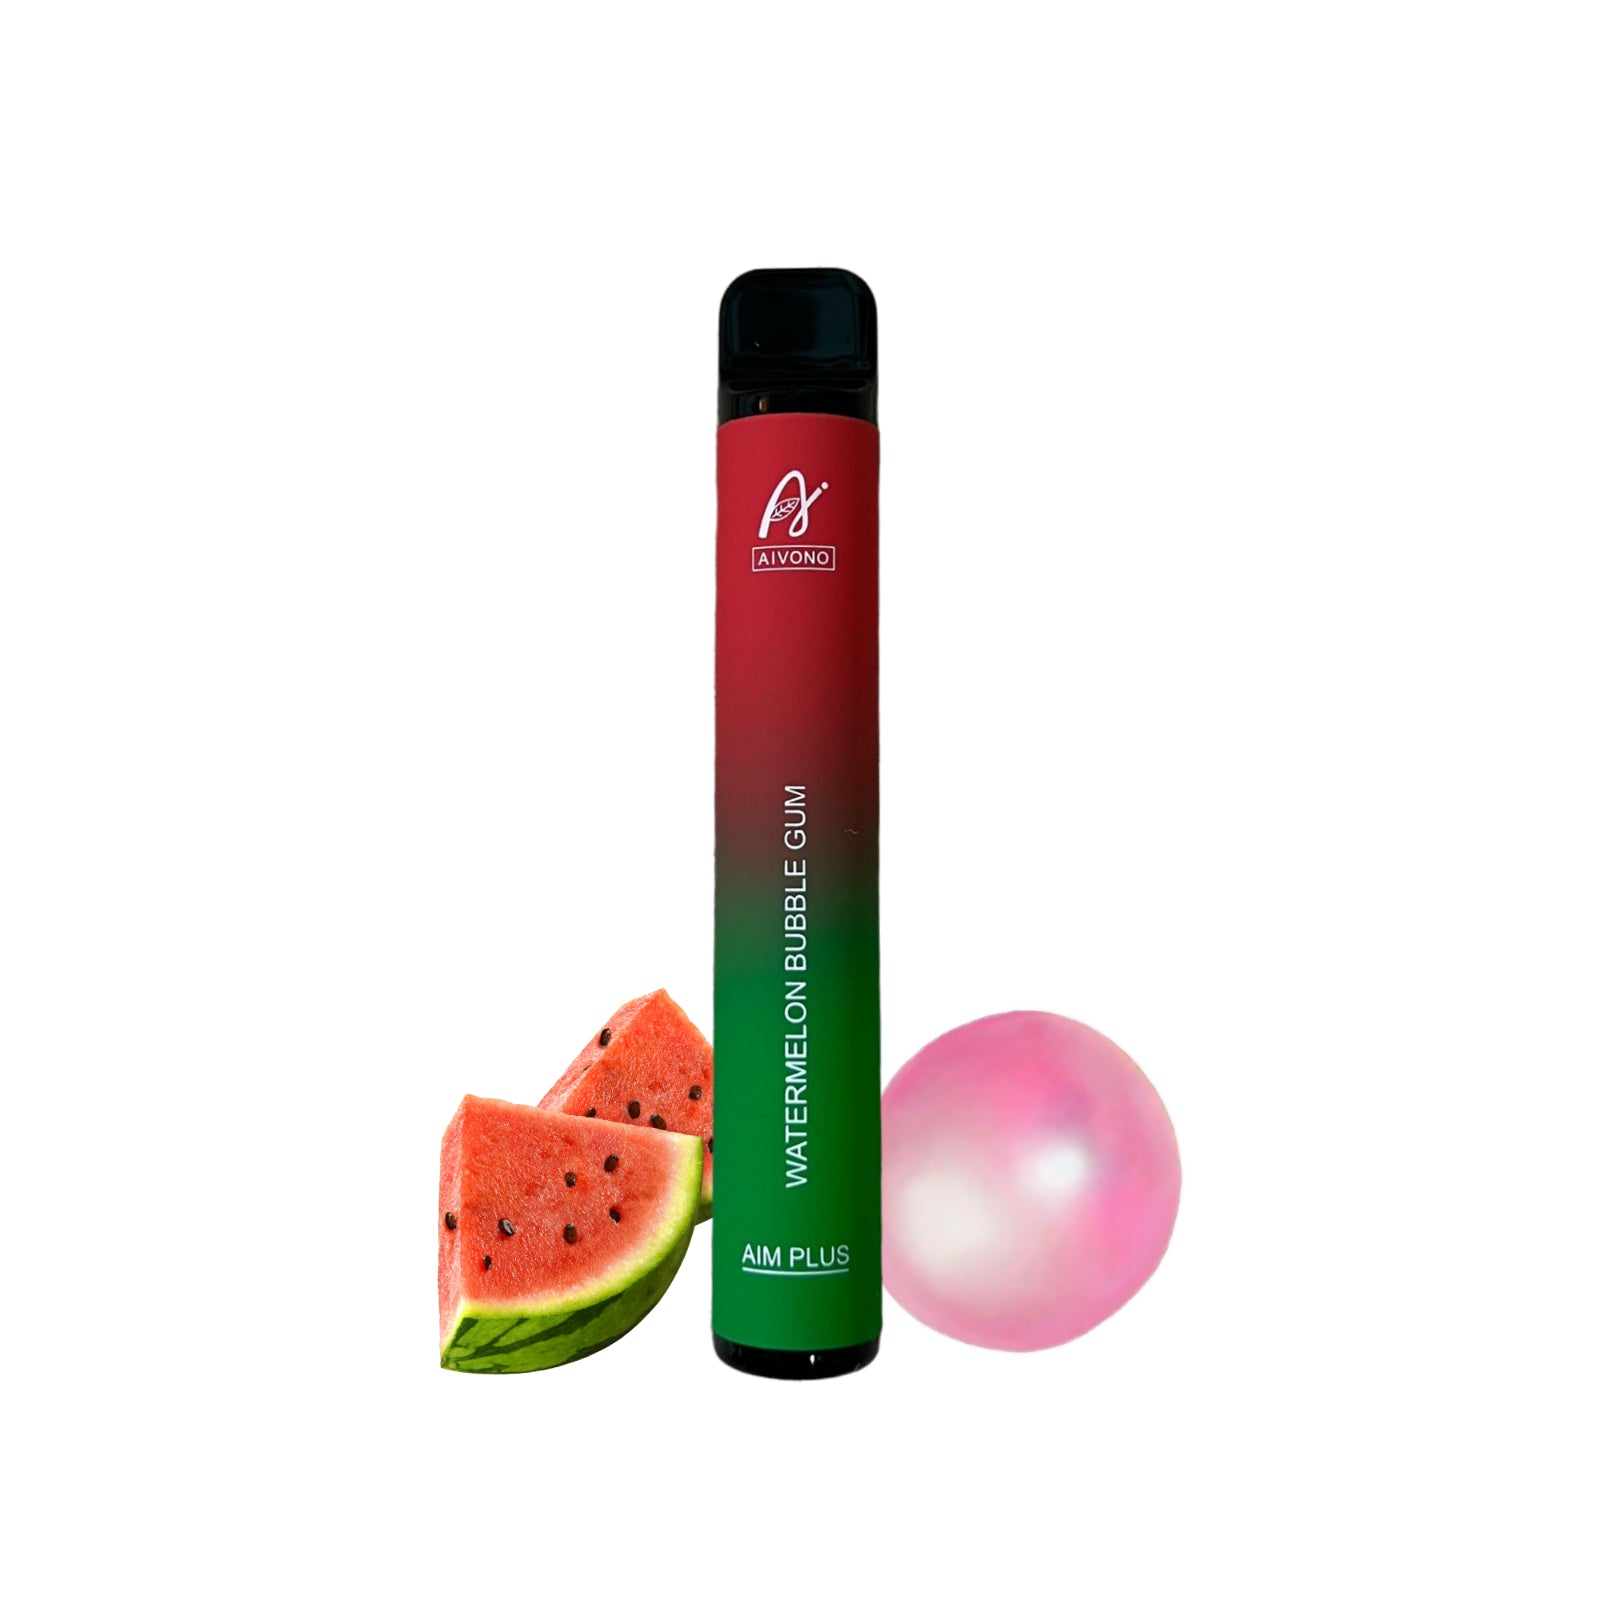 Aim Plus Watermelon Bubblegum 800 Puffs